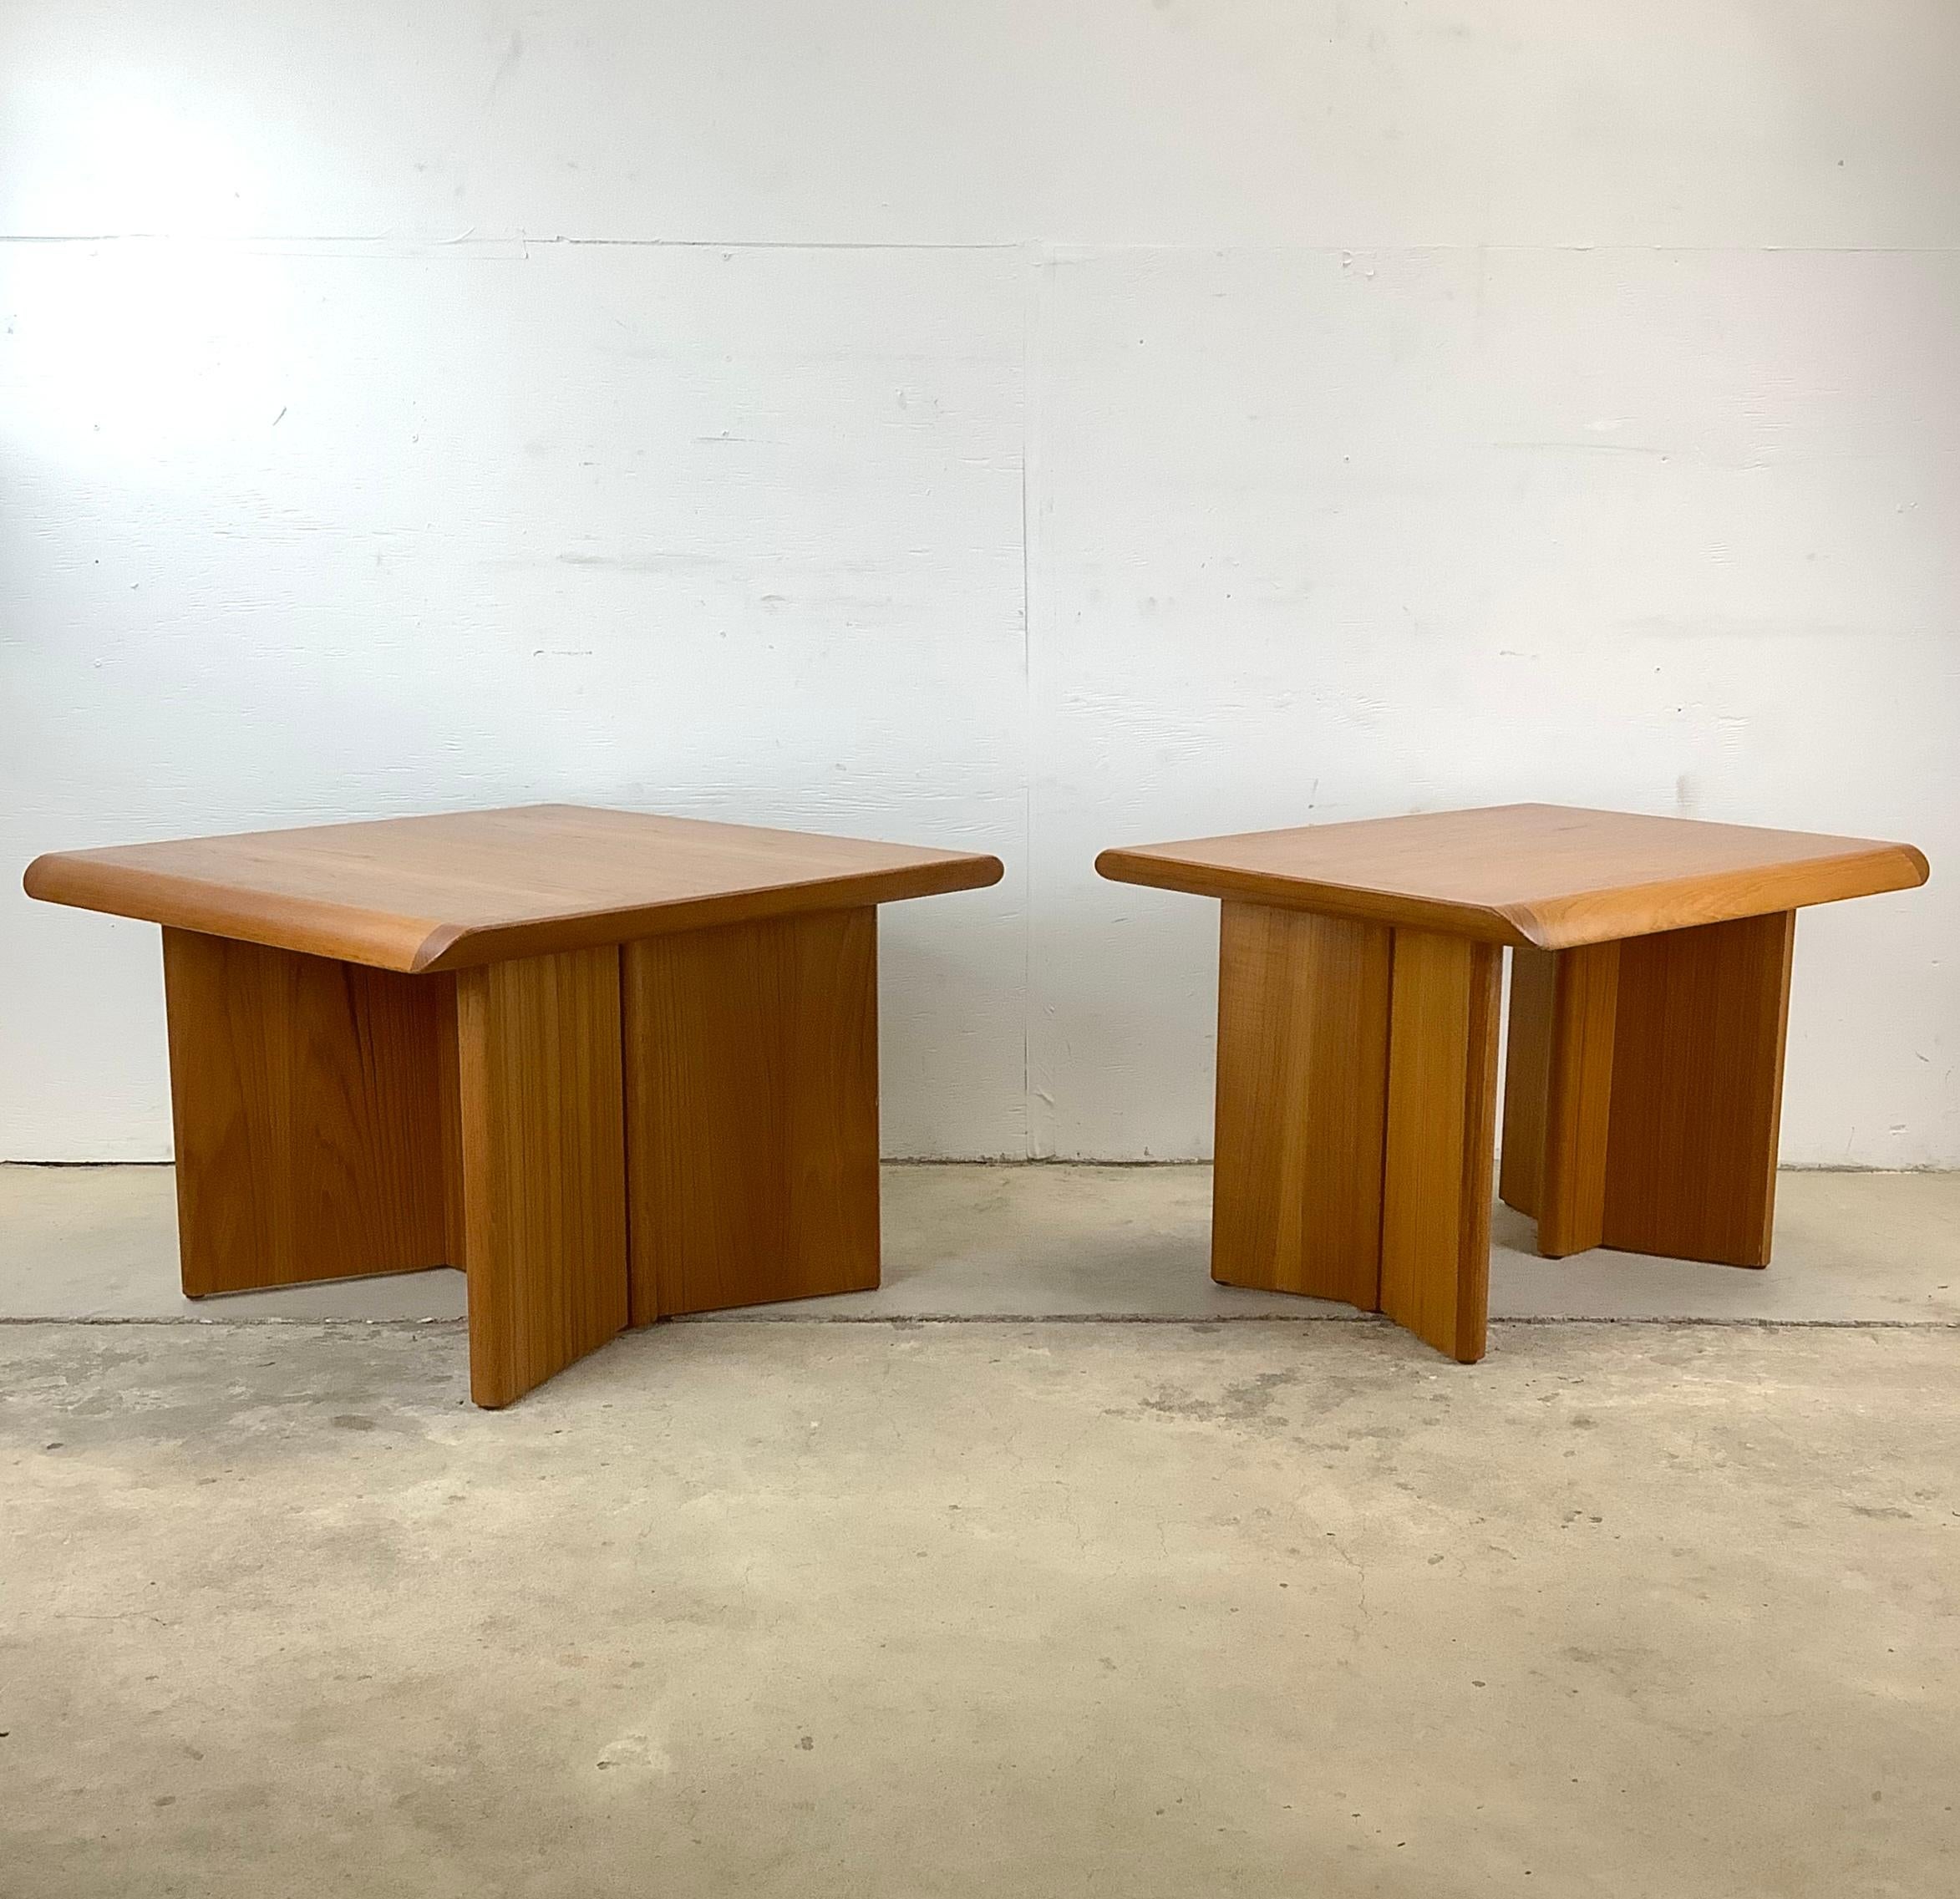 Dieses charmante Paar Vintage Modern Teak End Tables von Nordic Furniture ist eine reizvolle Kombination aus skandinavischem Stil, Funktionalität und Nachhaltigkeit. Diese aus hochwertigem Teakholz gefertigten Beistelltische weisen die für das